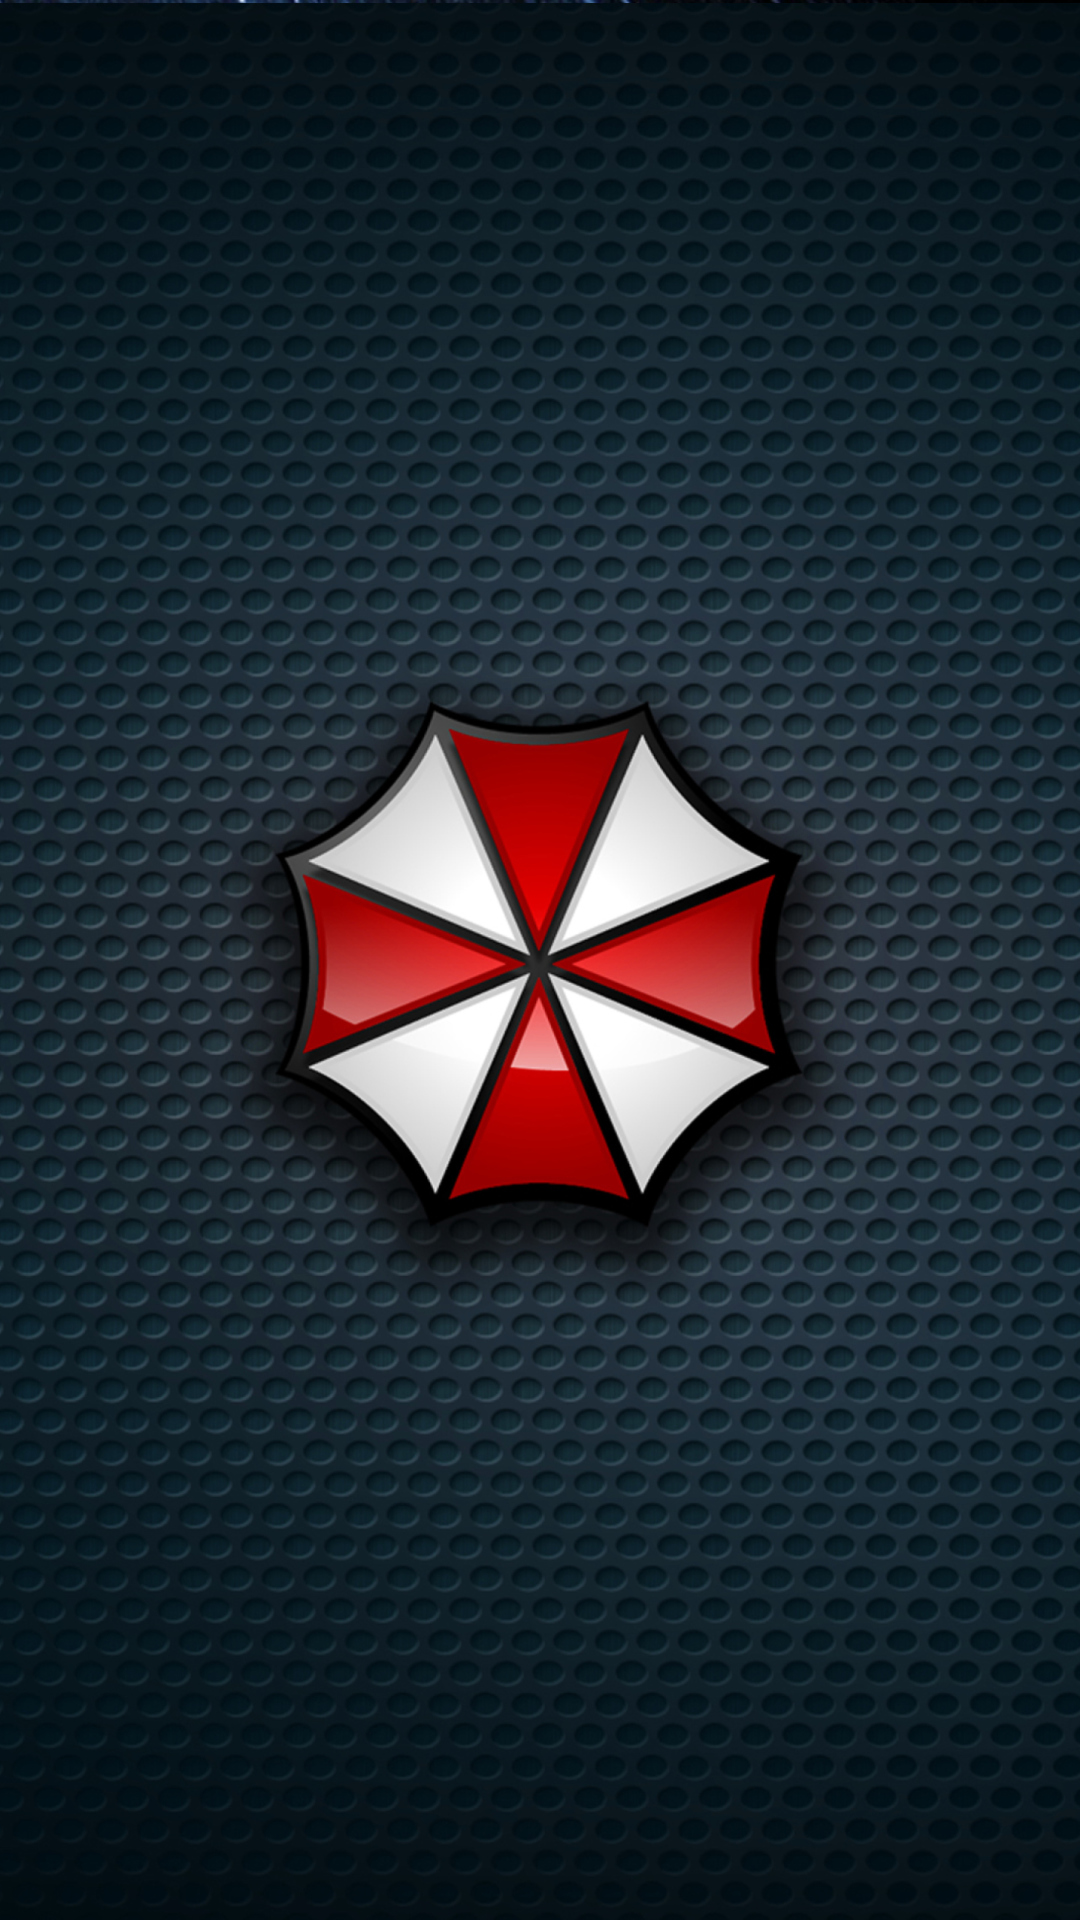 Umbrella Corporation screenshot #1 1080x1920